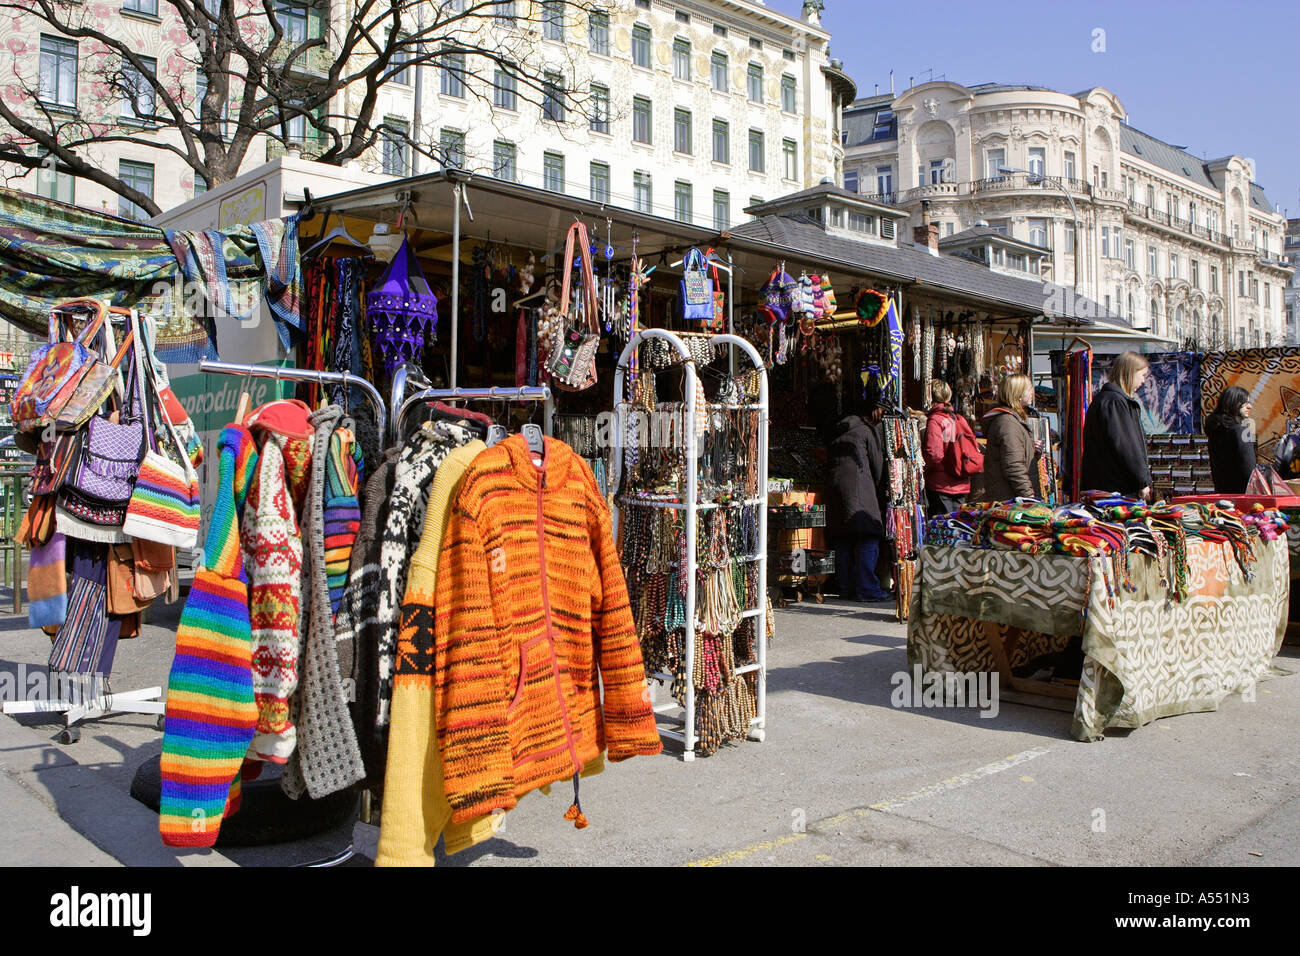 Stände für den Verkauf von Kleidung am Naschmarkt in Wien Österreich  Stockfotografie - Alamy